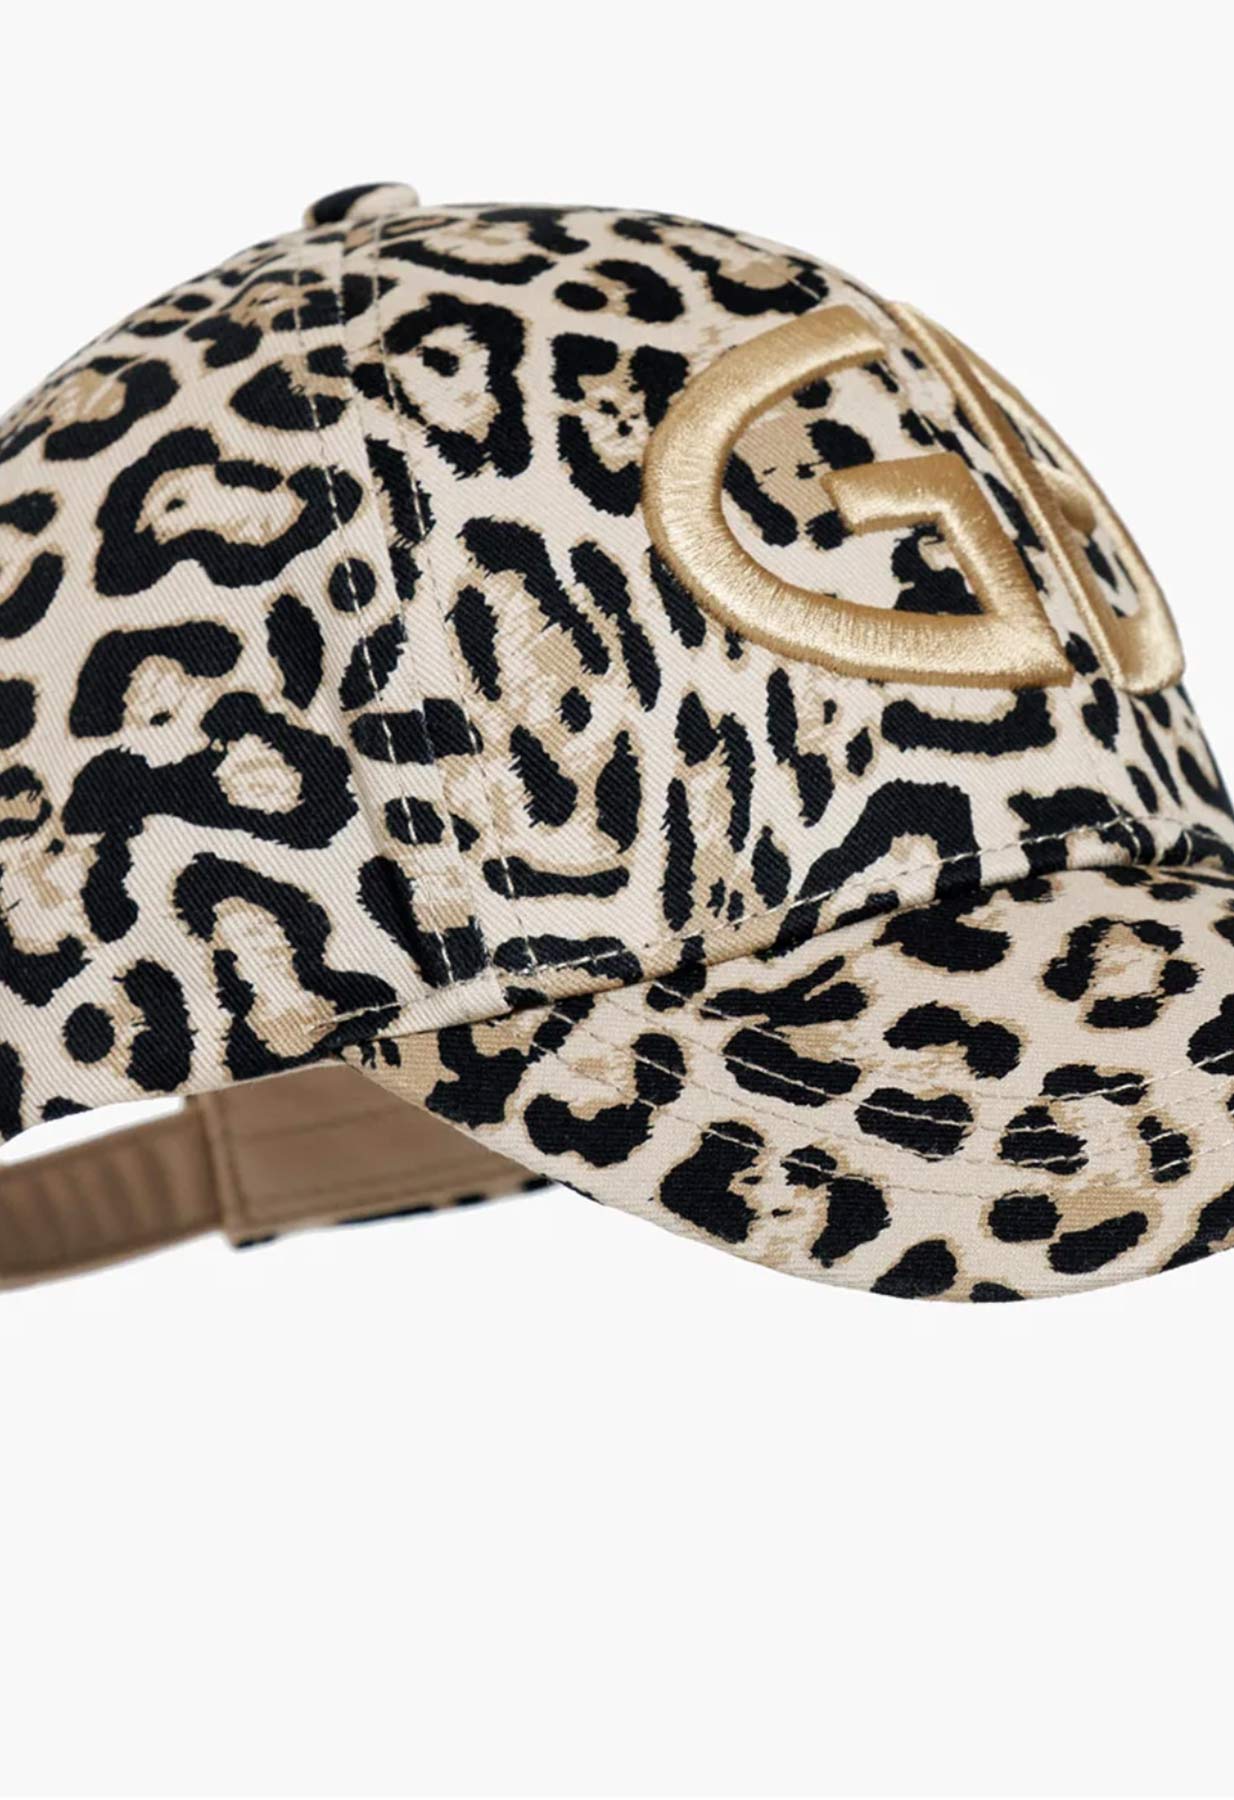 Goldbergh Milembe Peaked Cap in Jaguar Print